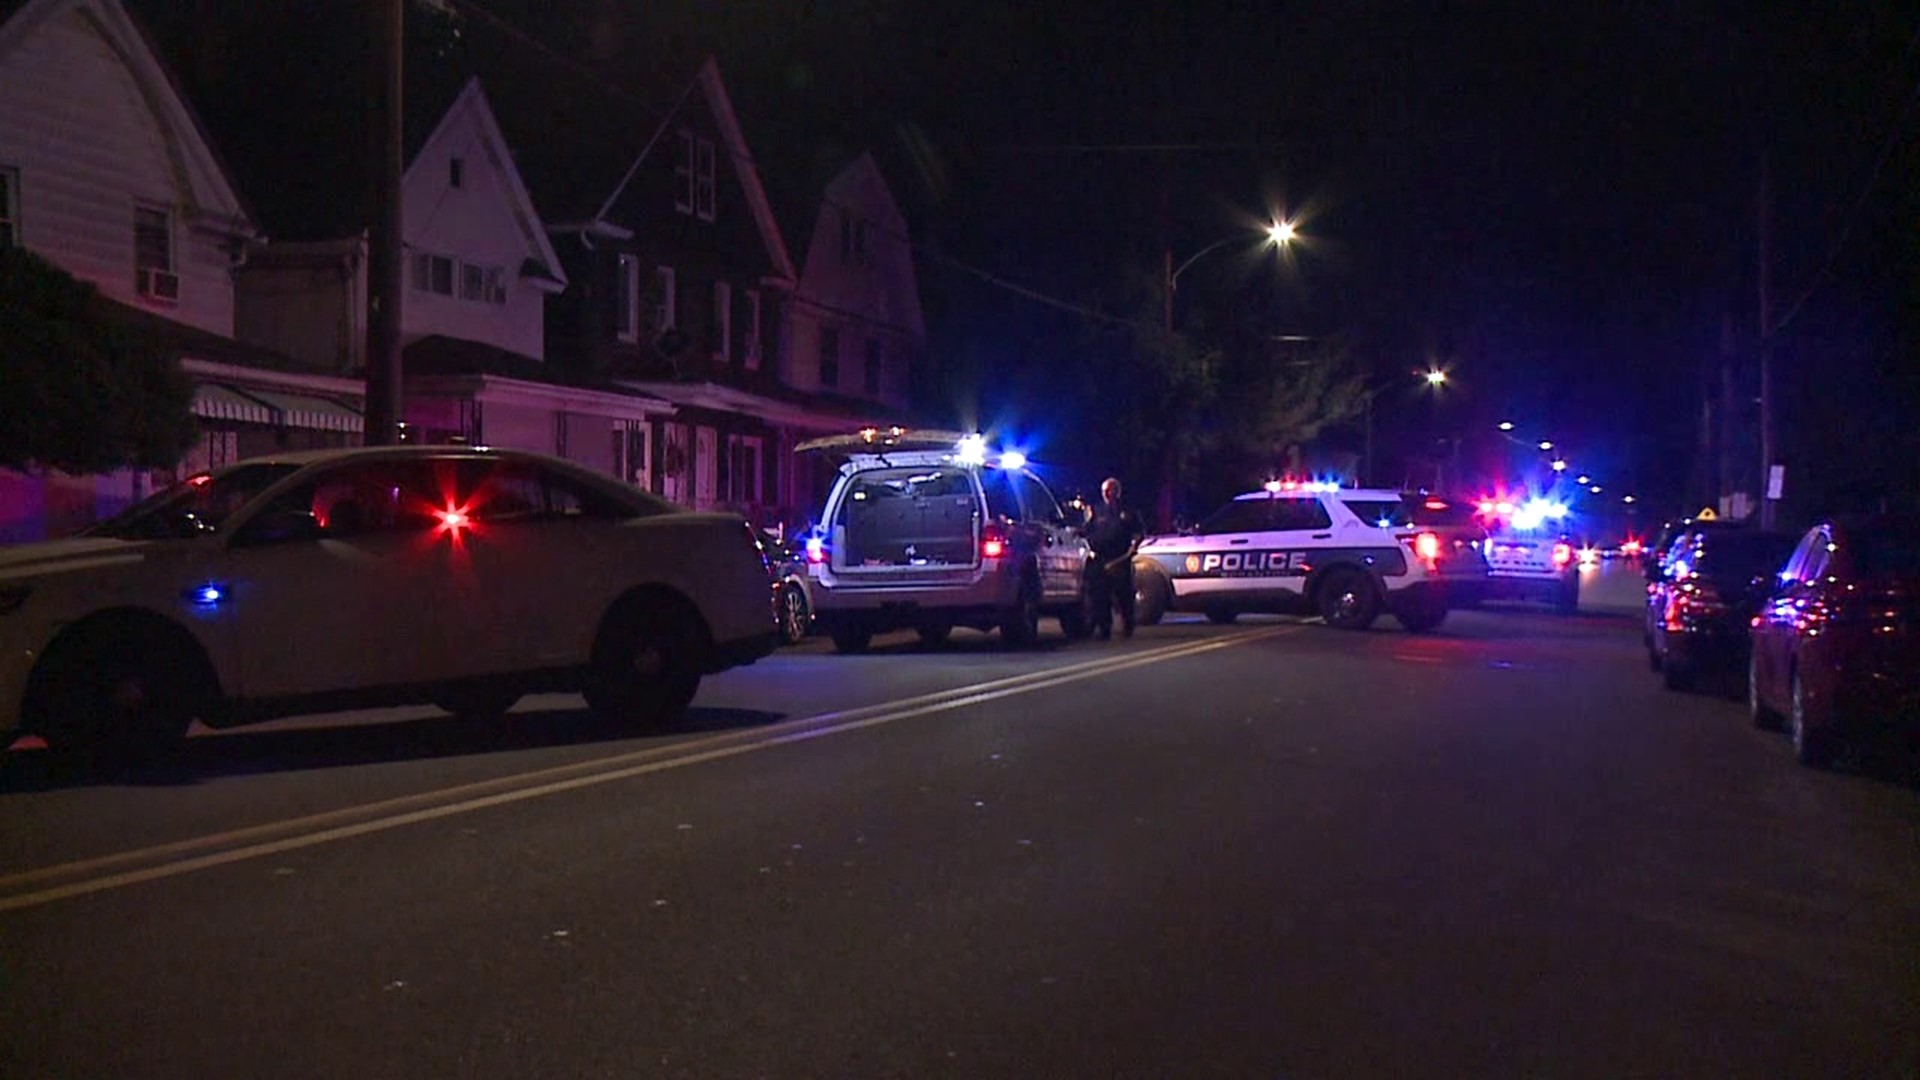 The shooting happened around 8:30 p.m. Saturday night.